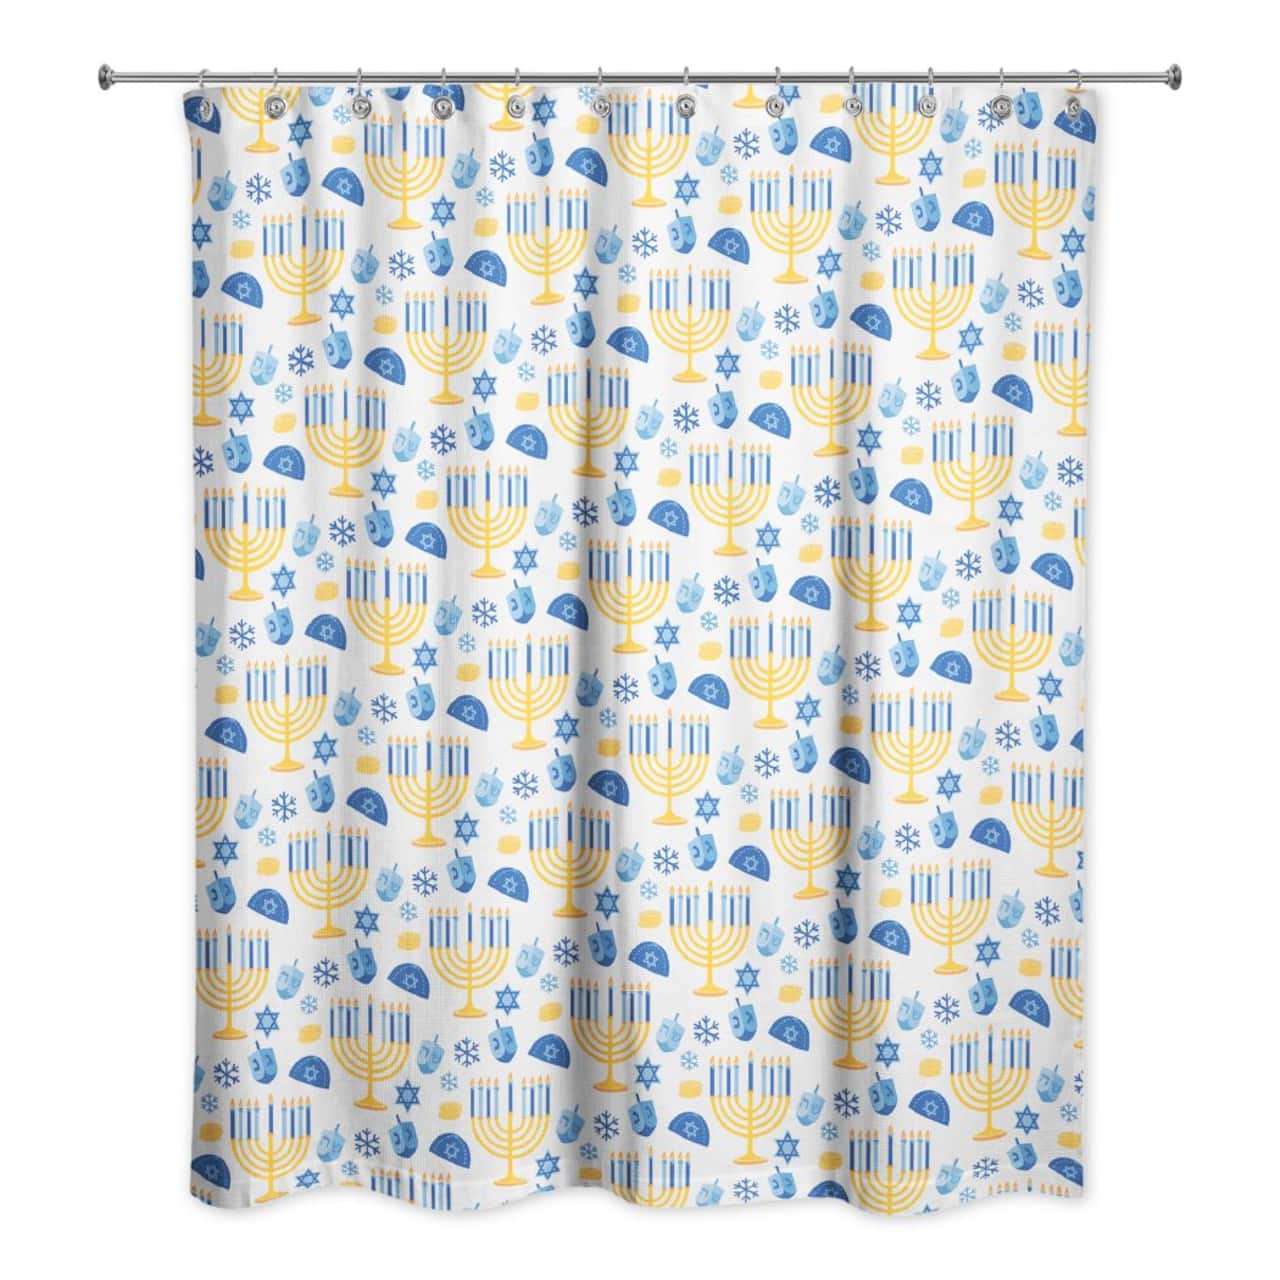 Hanukkah Menorah Pattern Shower Curtain